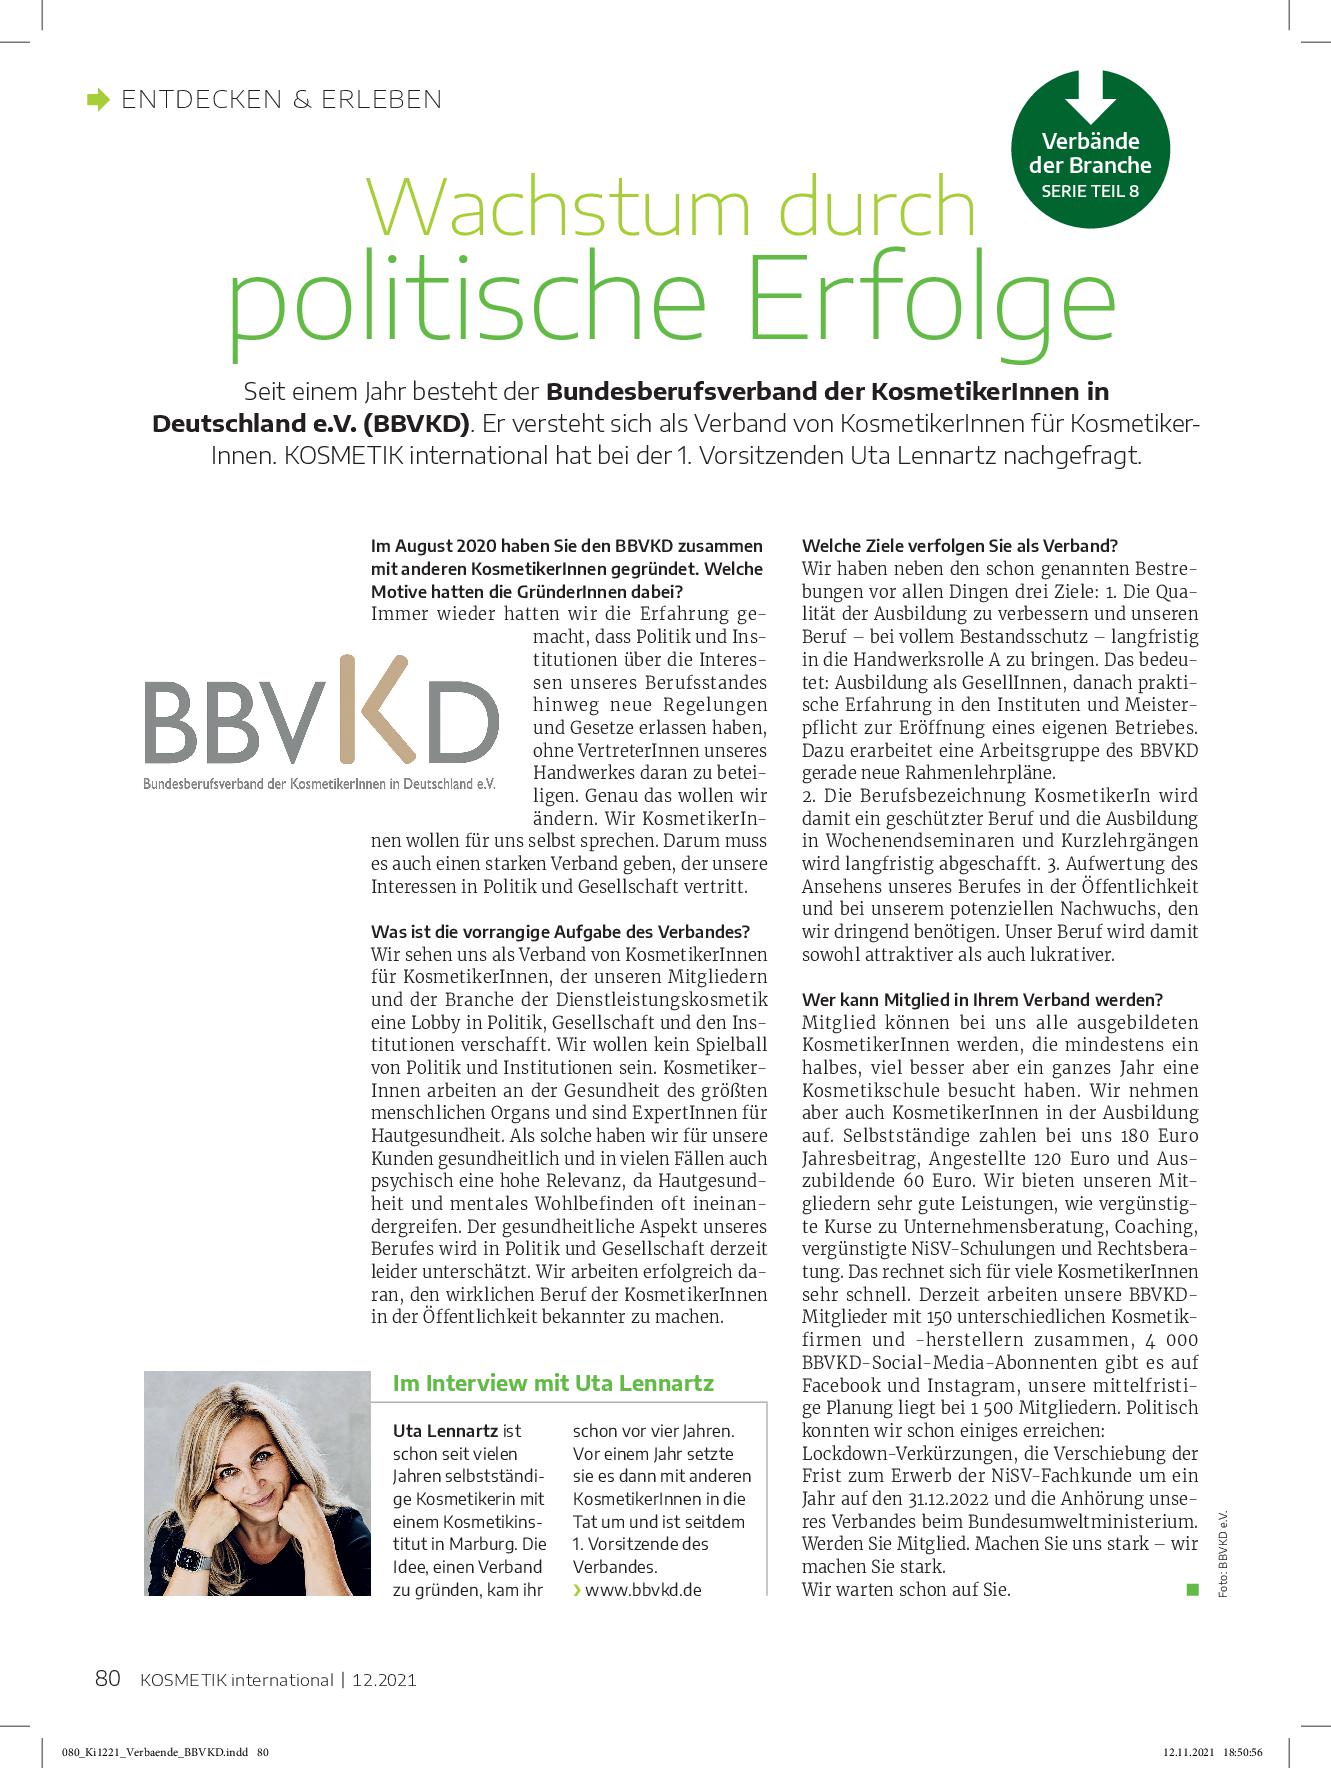 Featured image for “Interview des „Fachmagazins Kosmetik International“ mit 1. Vorsitzender Uta Lennartz, Ausgabe 12.2021”